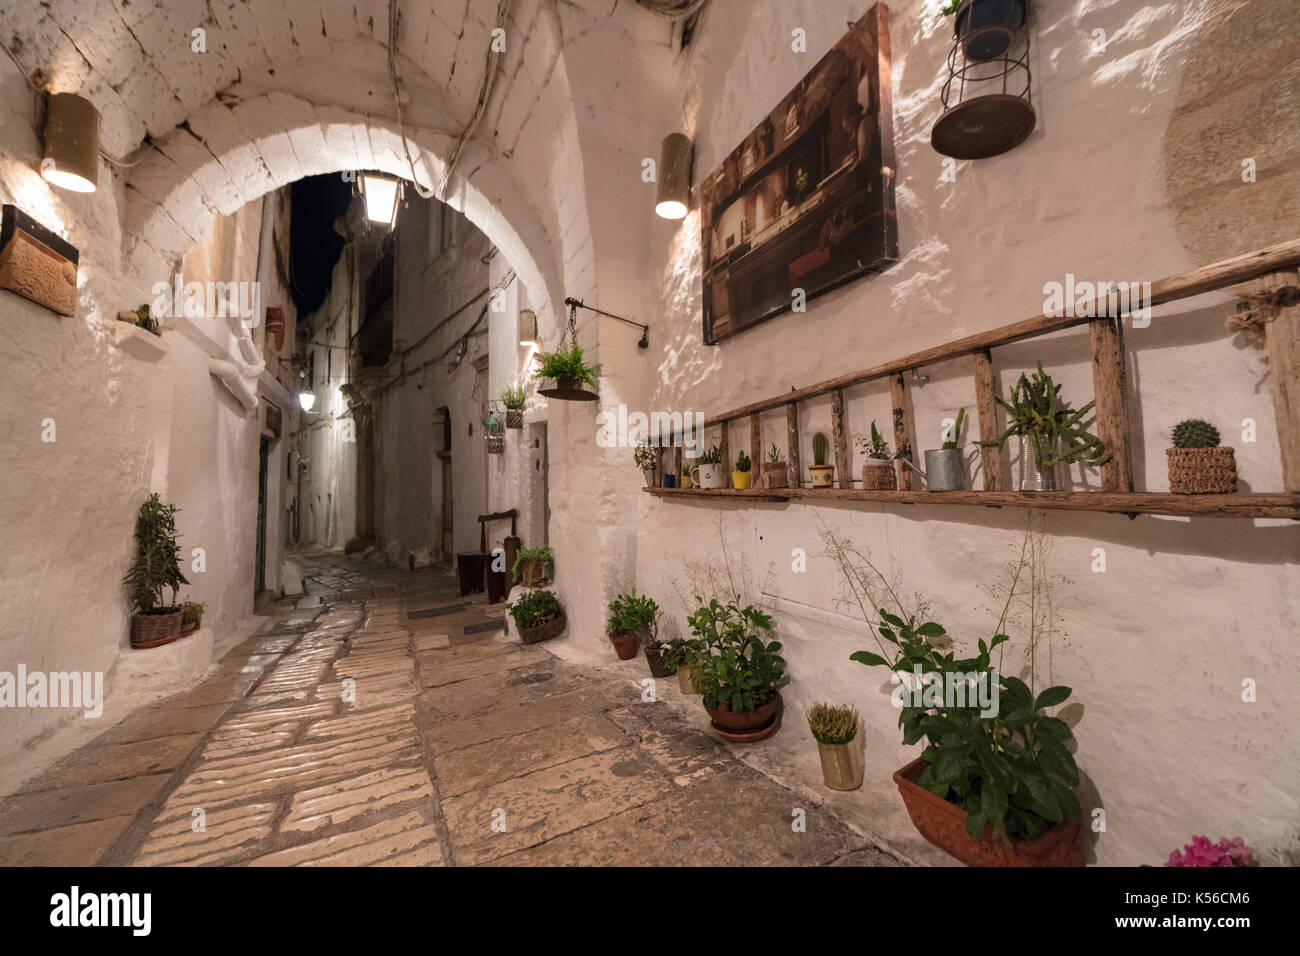 Ruelle typique et maisons de la vieille ville médiévale de la province de Brindisi brindisi Pouilles Italie Europe Banque D'Images